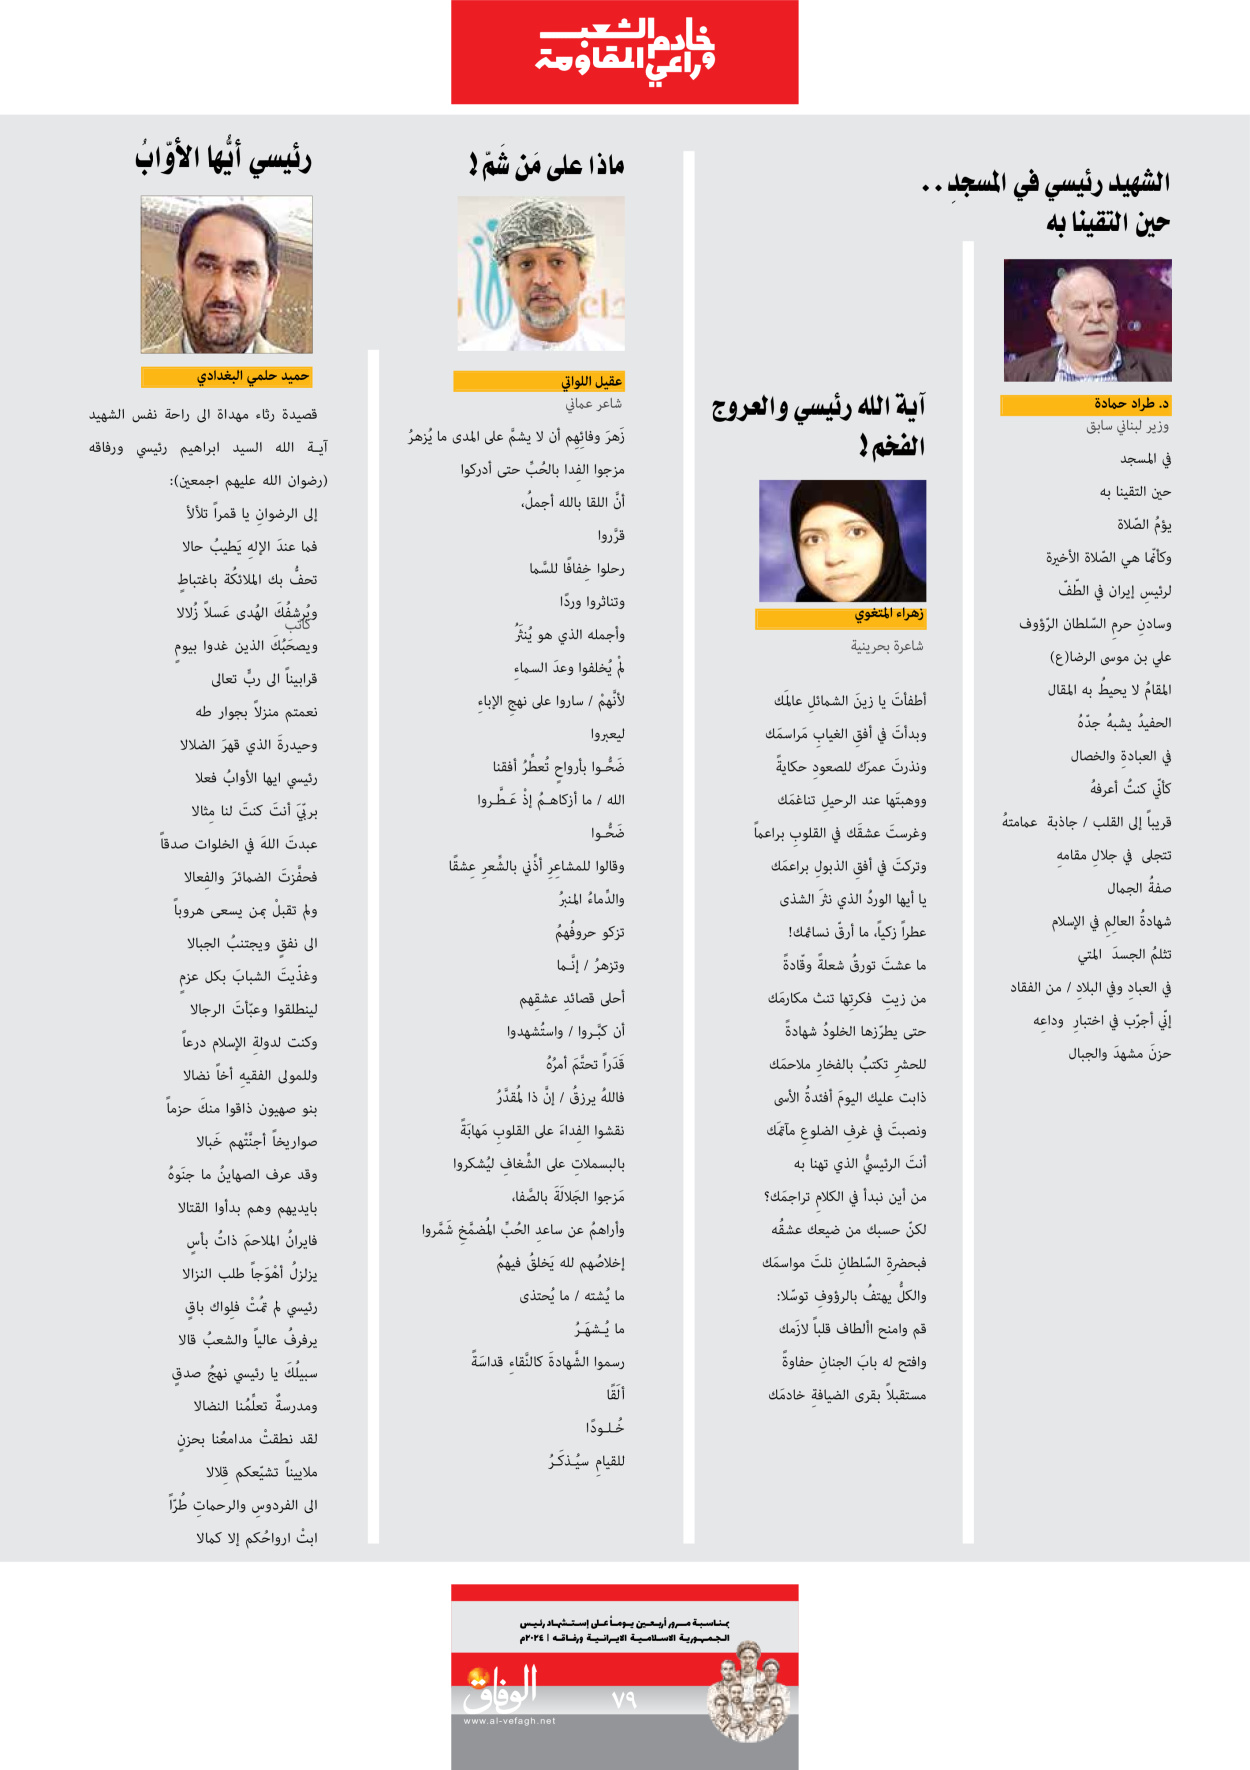 صحیفة ایران الدولیة الوفاق - ملحق ویژه نامه چهلم شهید رییسی - ٢٩ يونيو ٢٠٢٤ - الصفحة ۷۹